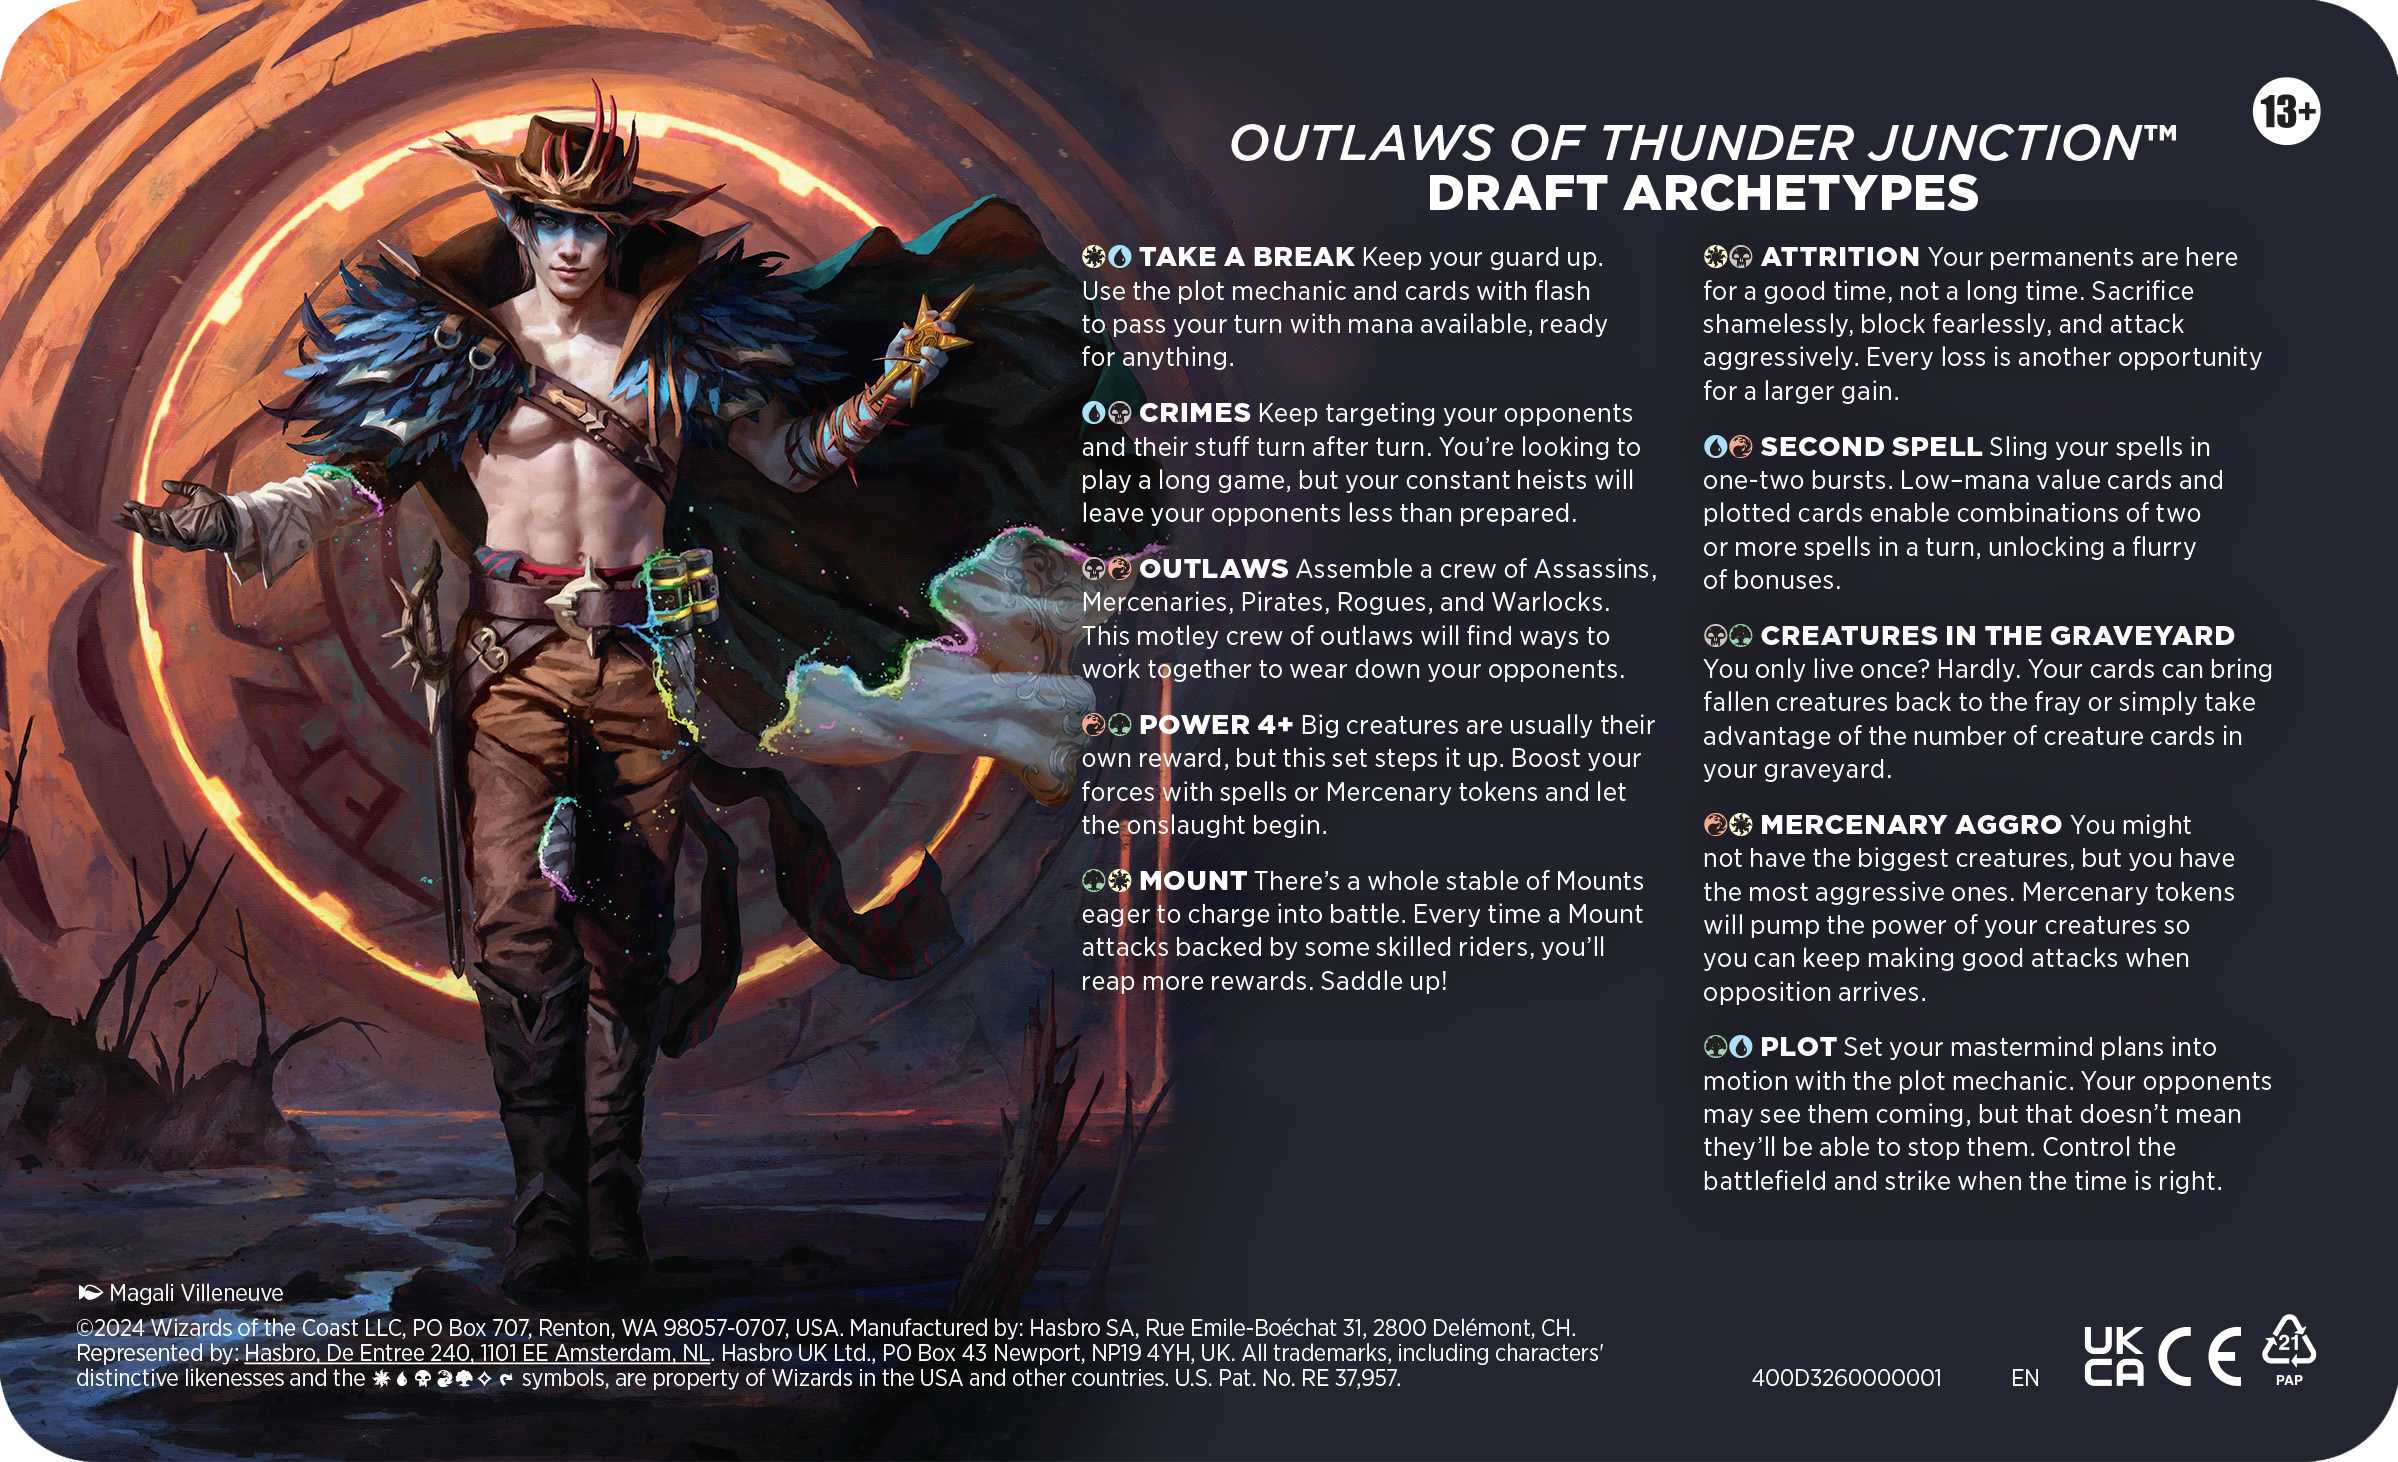 Beilage zu den Draft-Archetypen von Outlaws von Thunder Junction